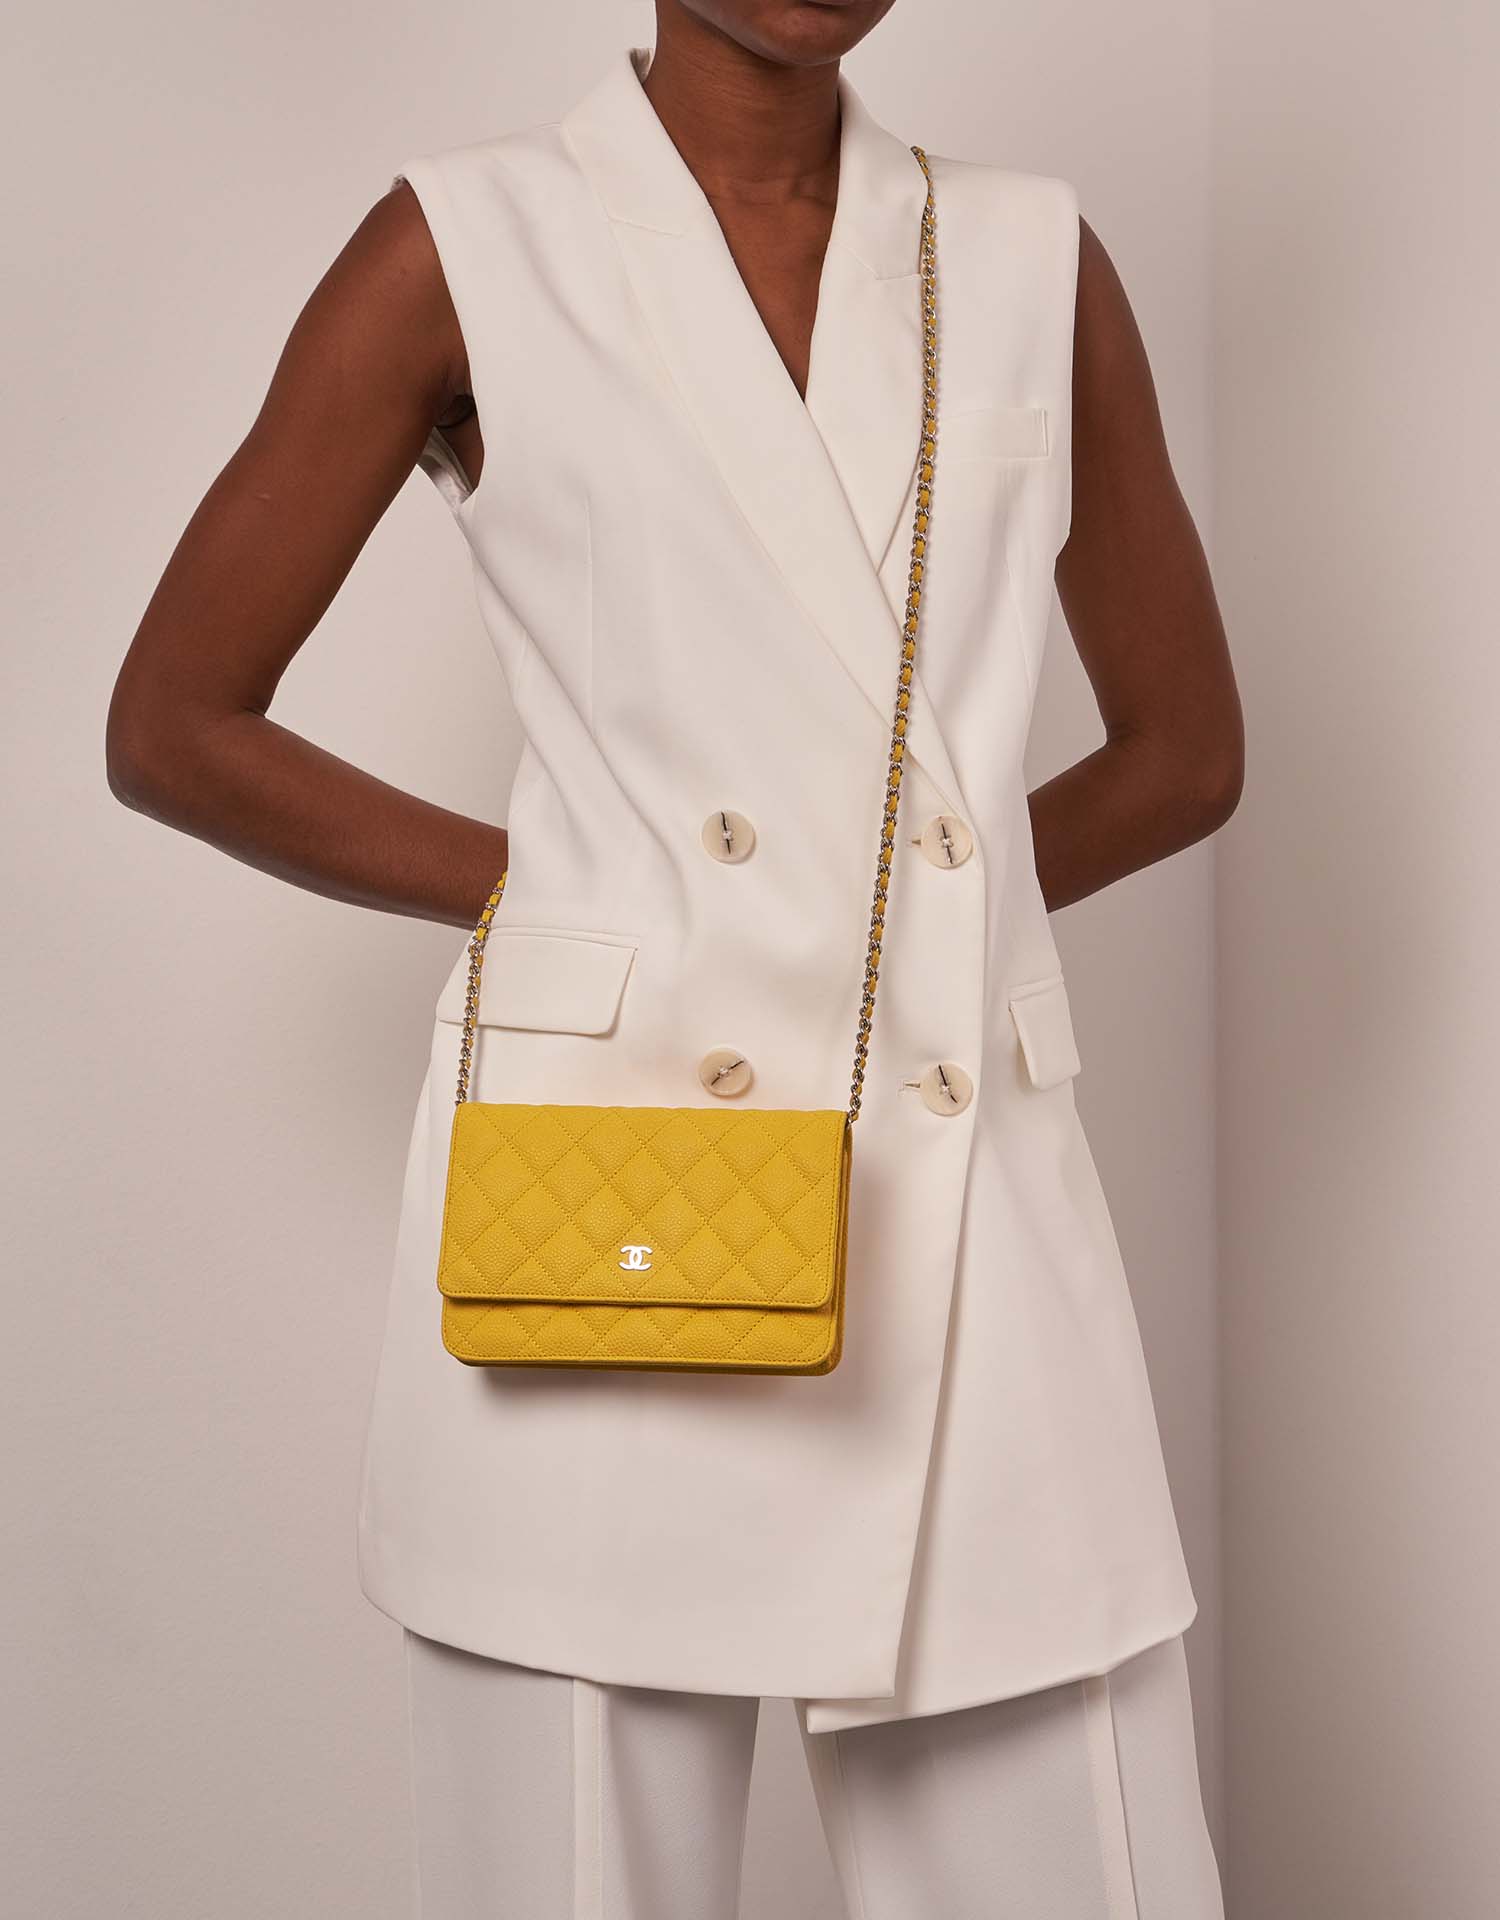 Chanel Timeless WOC Gelb Größen Getragen | Verkaufen Sie Ihre Designer-Tasche auf Saclab.com